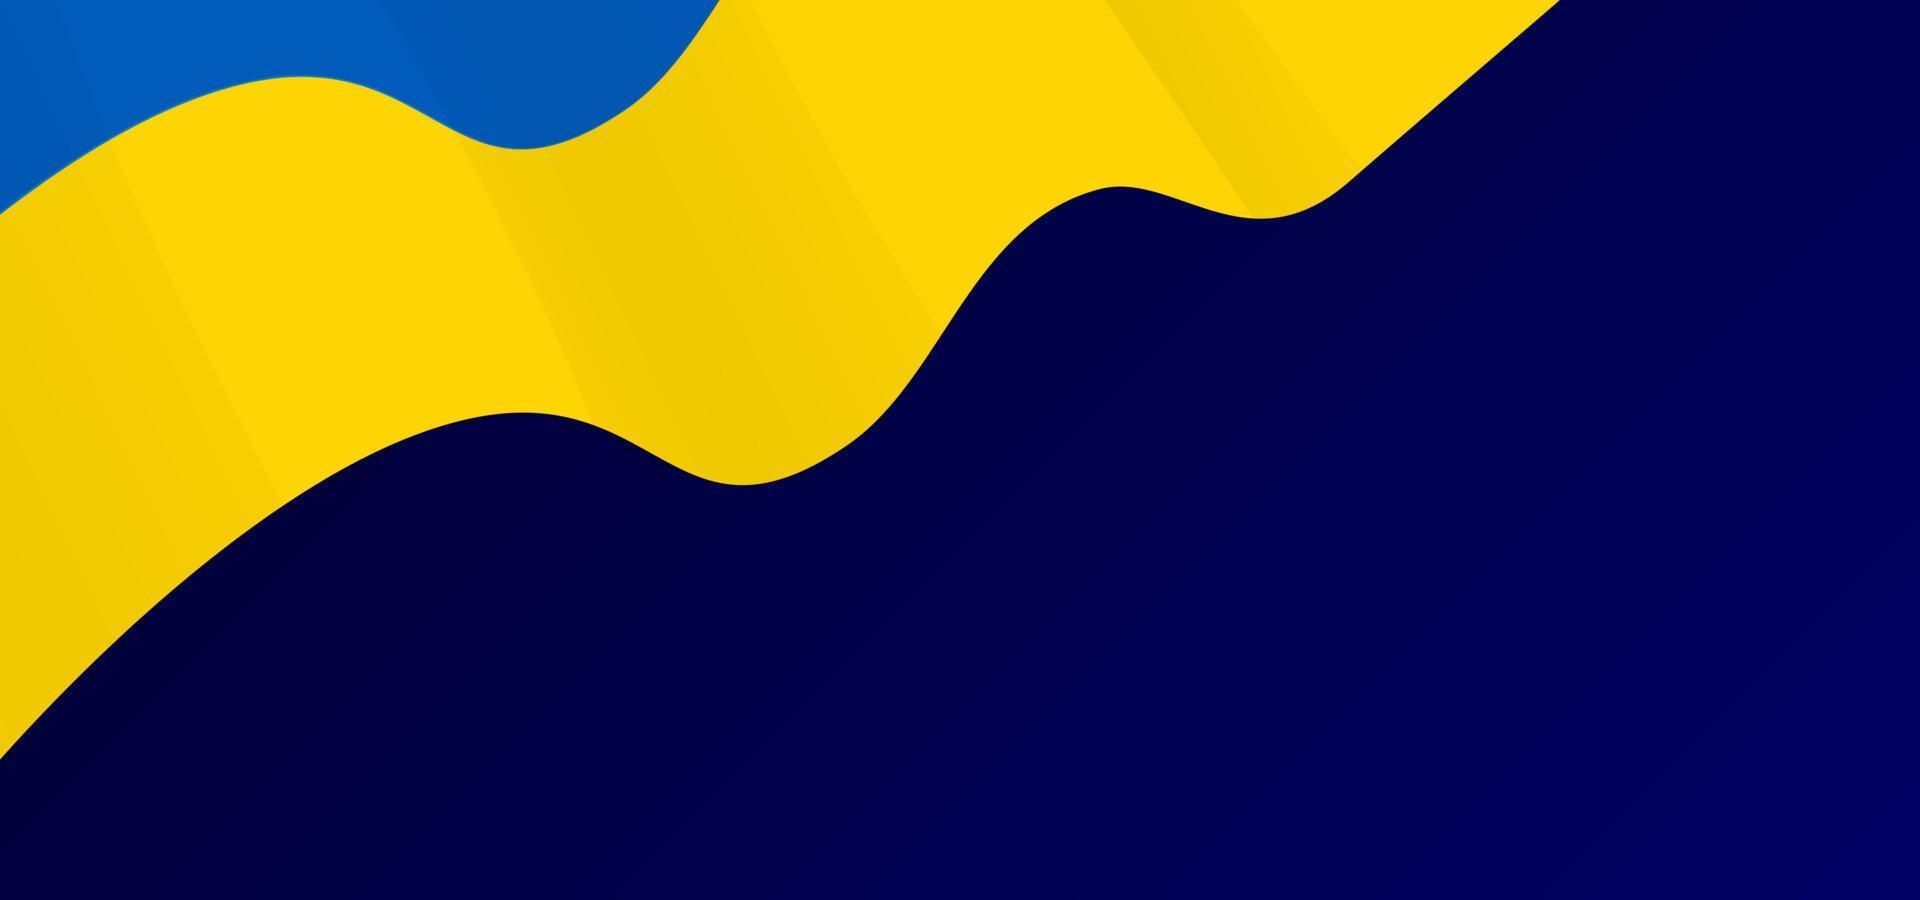 sfondo vettoriale con bandiera ucraina. bandiera nazionale con sfondo blu e spazio libero per il testo